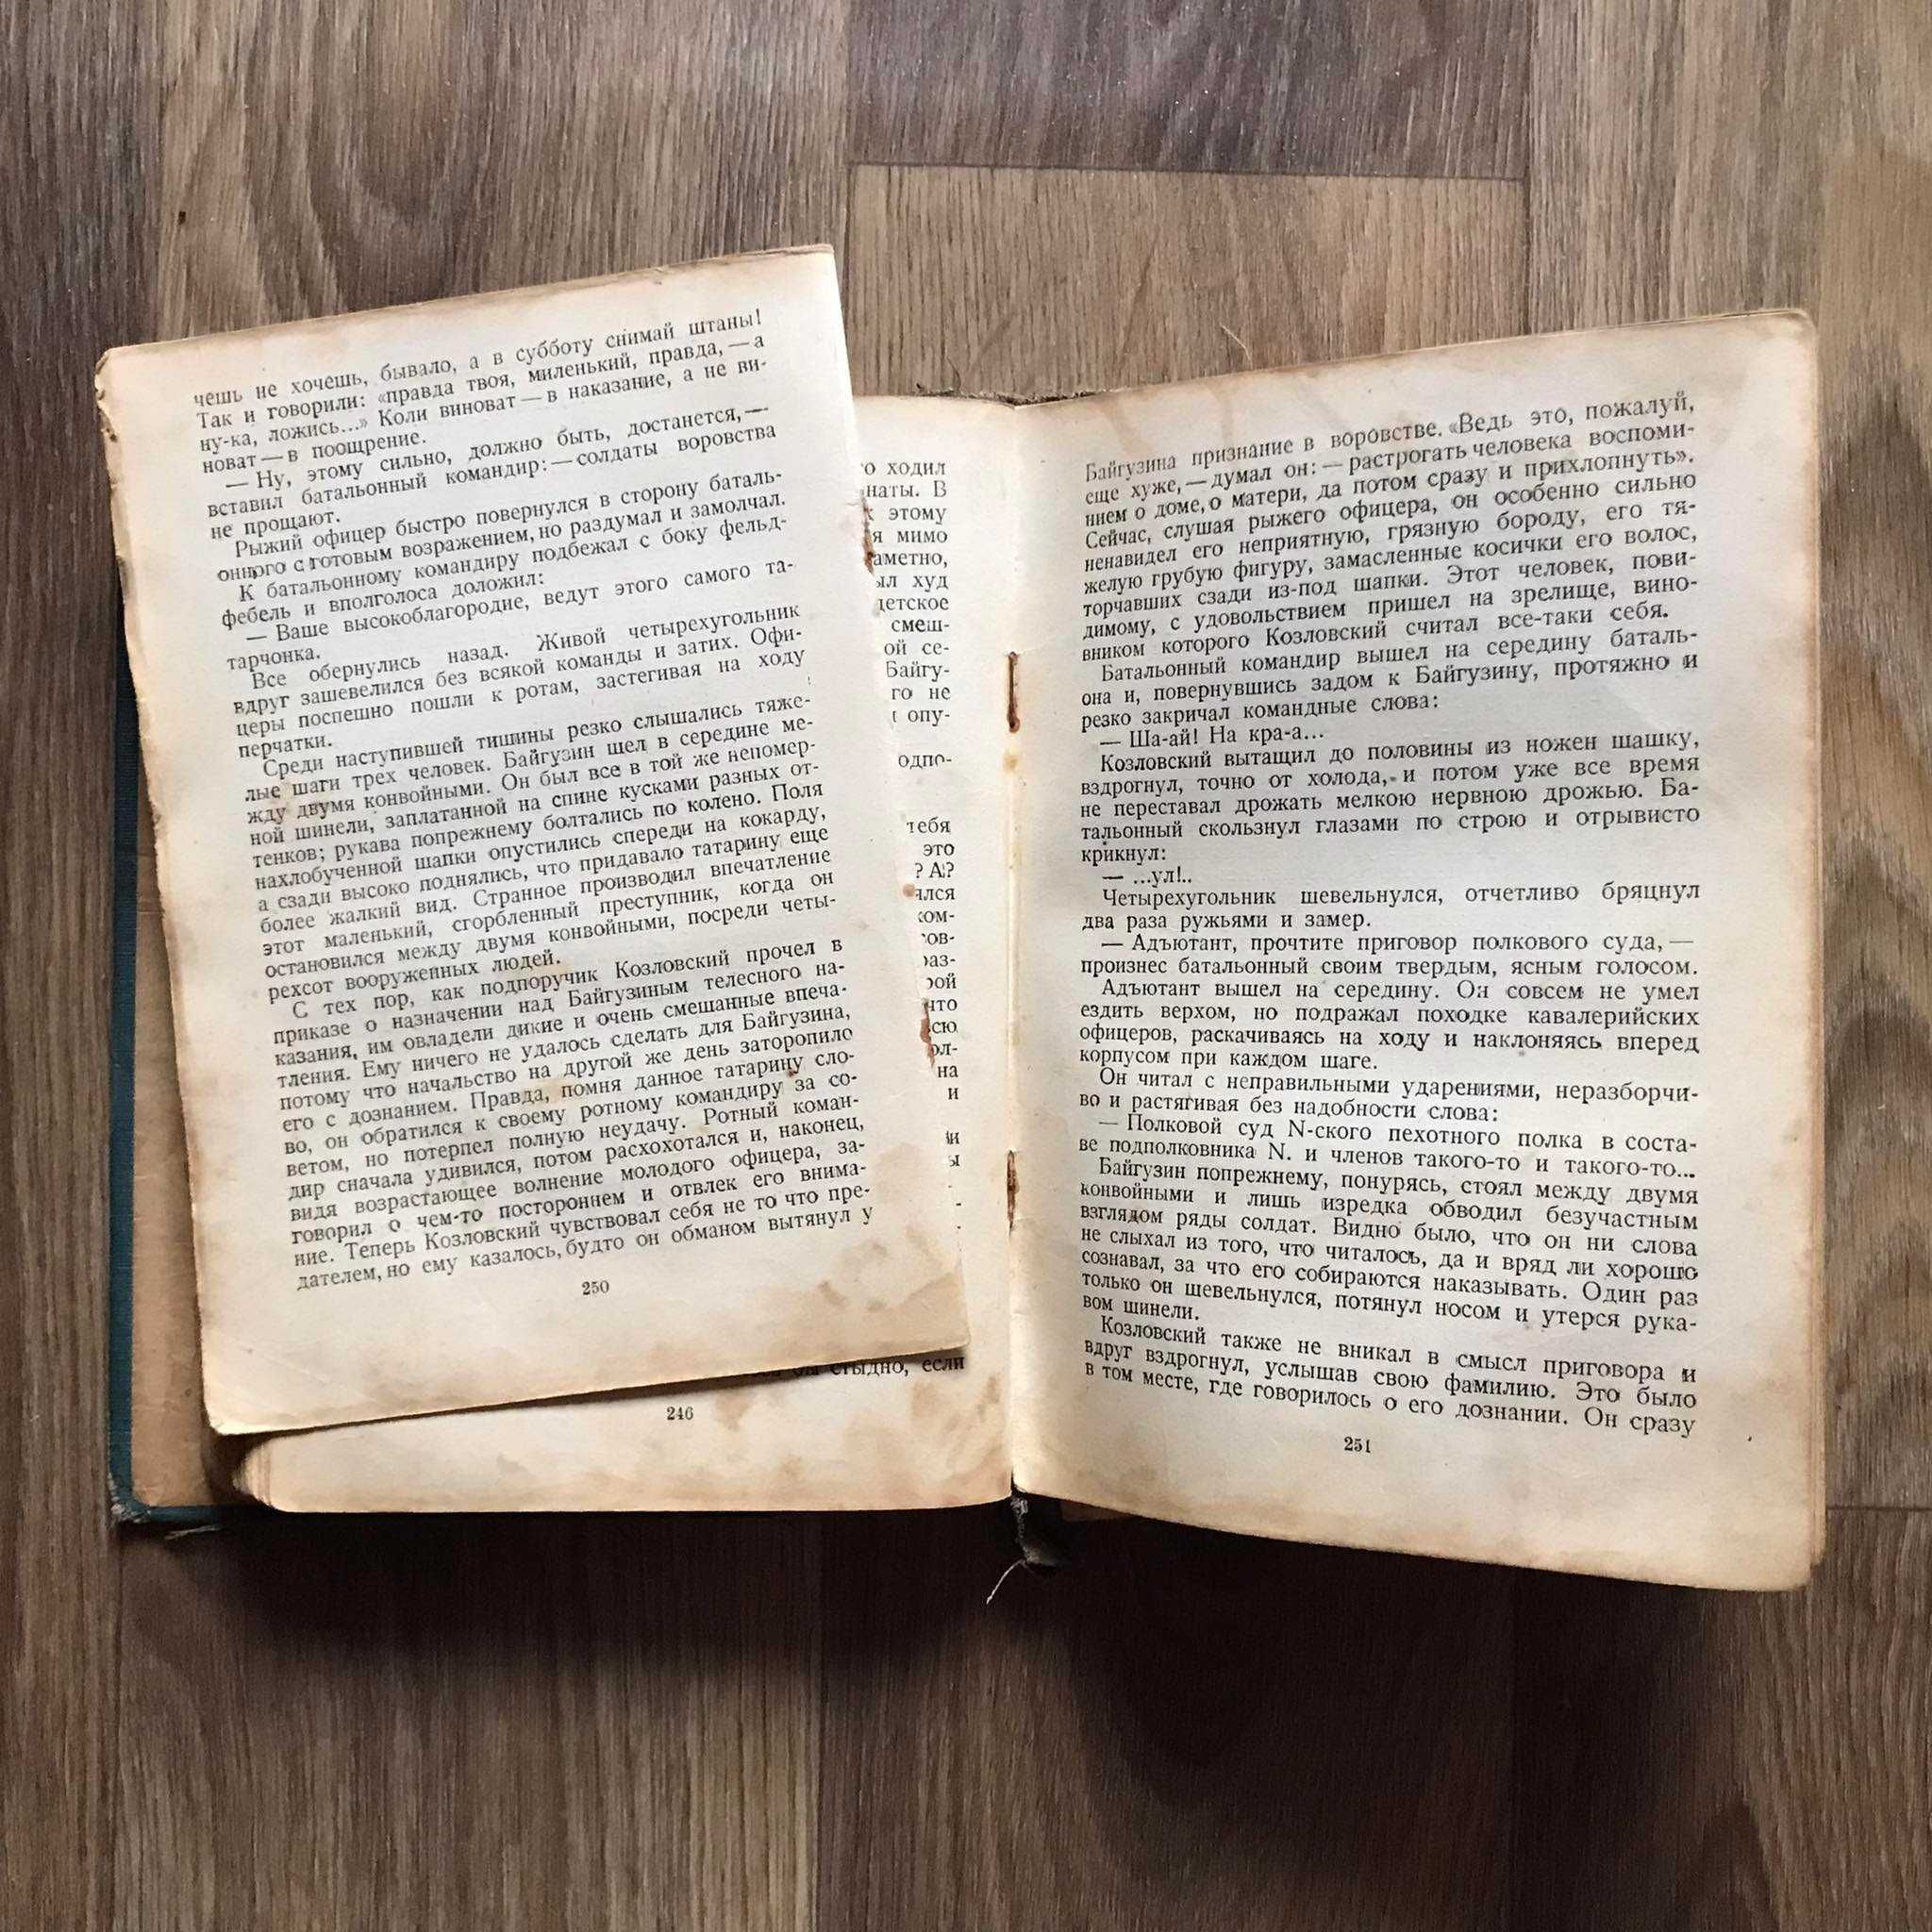 Книга А.И. Куприн "Избранное" Том 2 1937 год